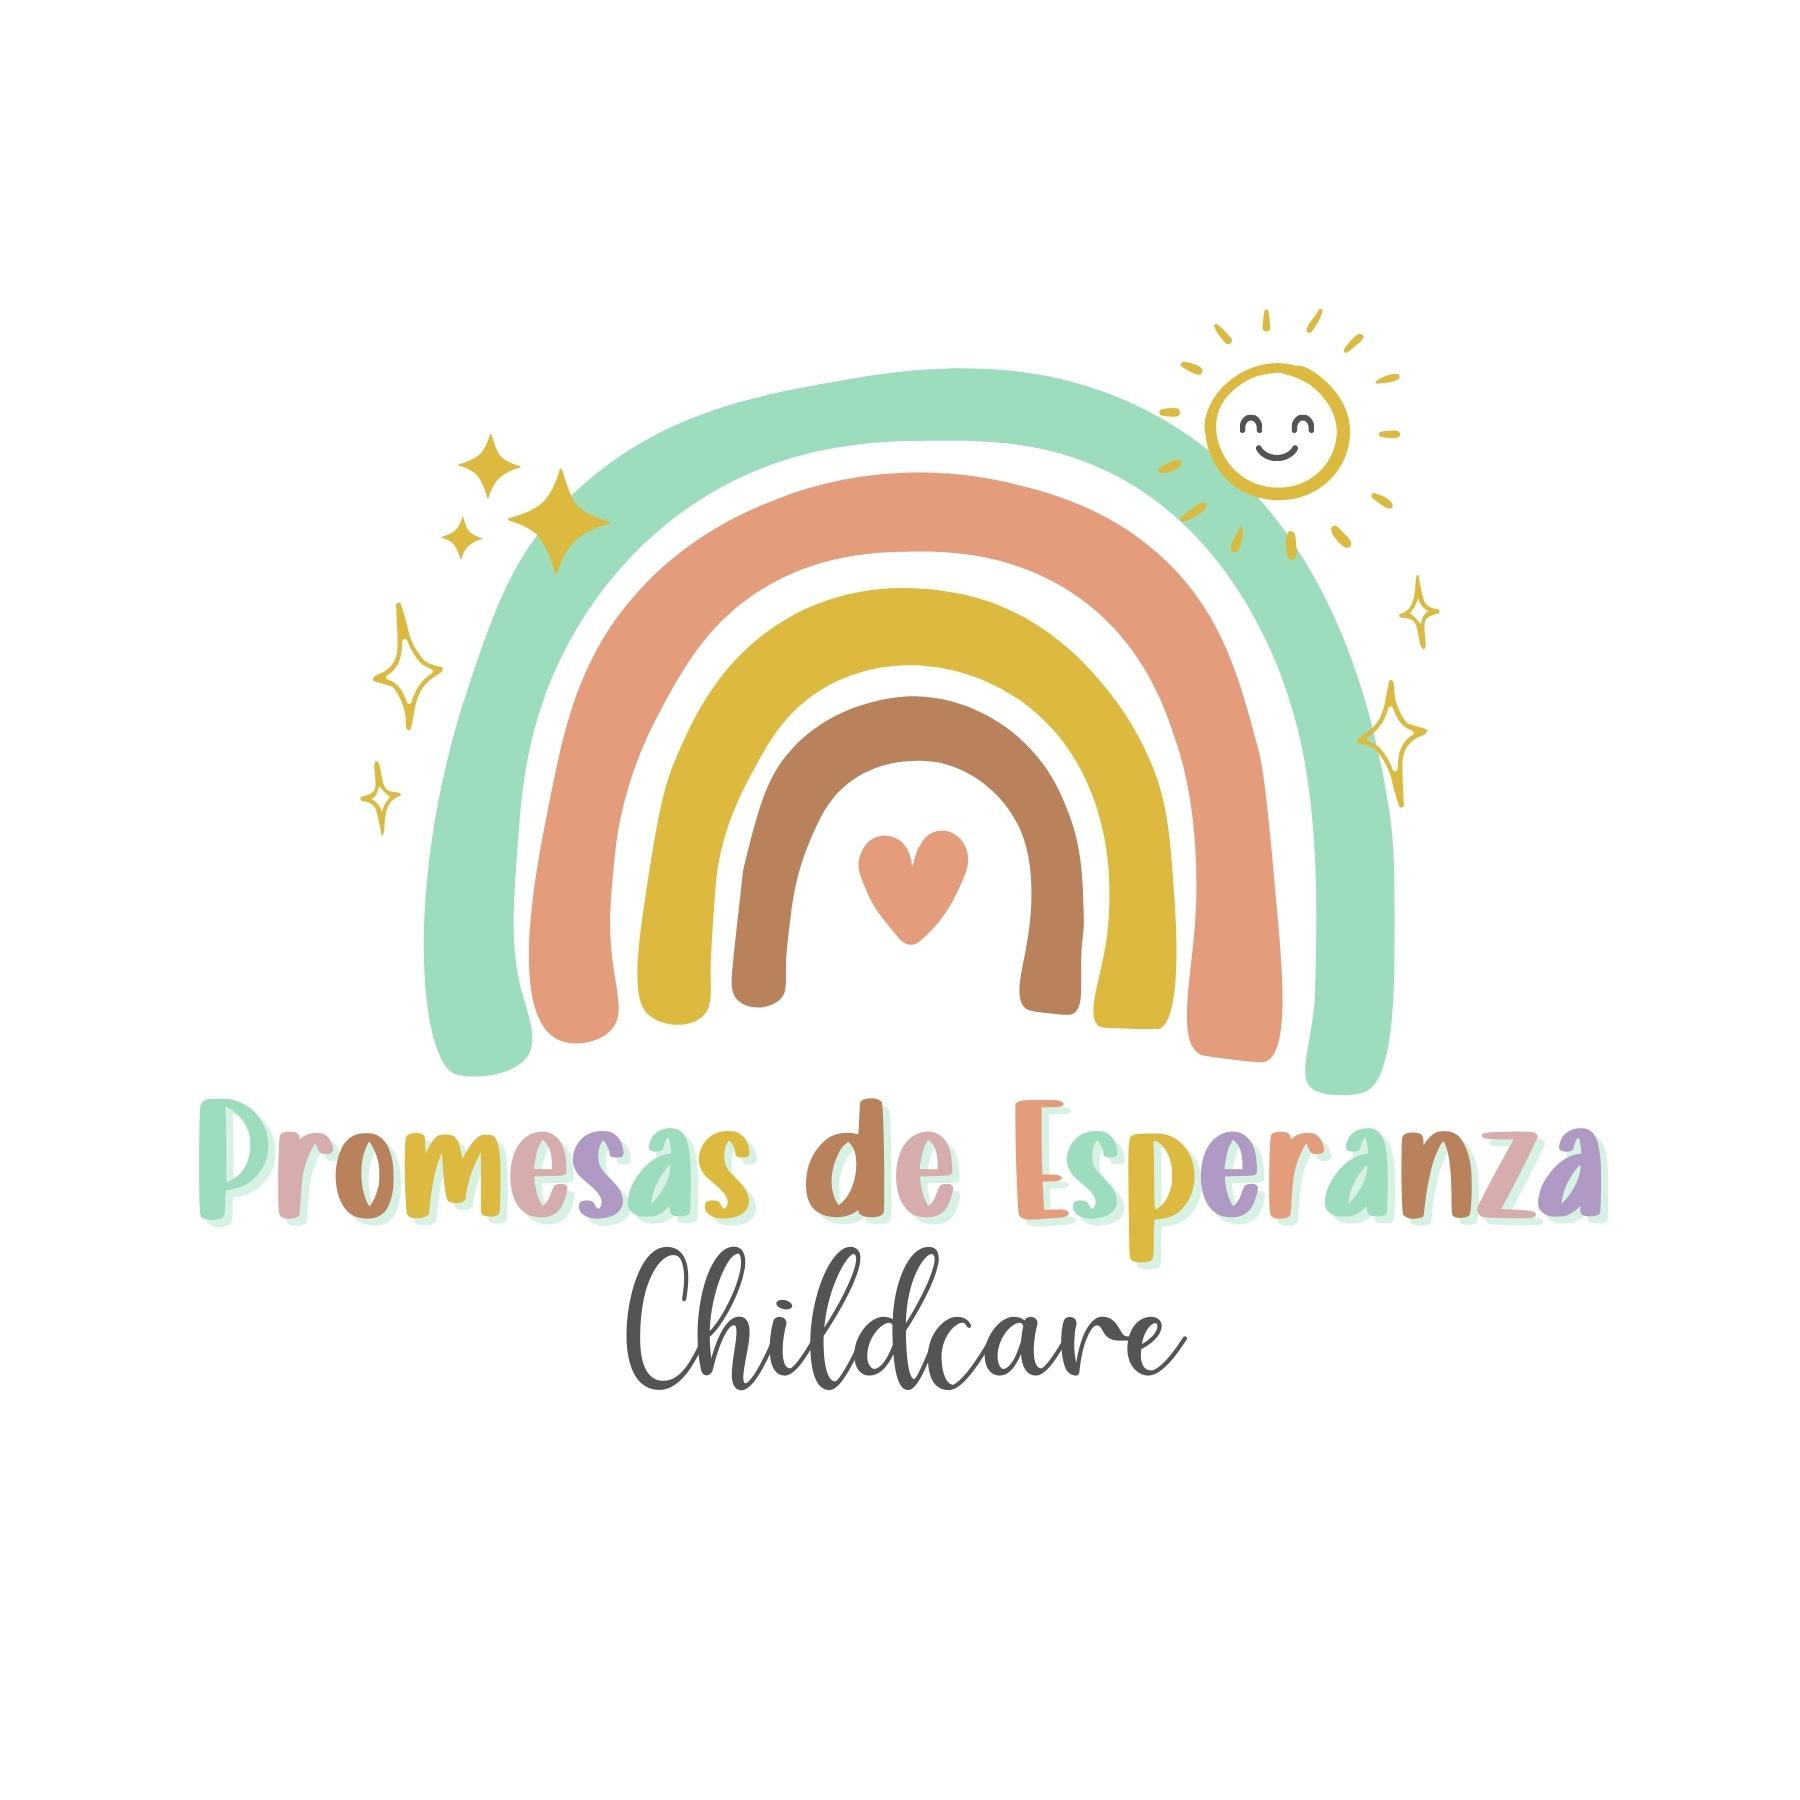 Promesas de Esperanza Childcare